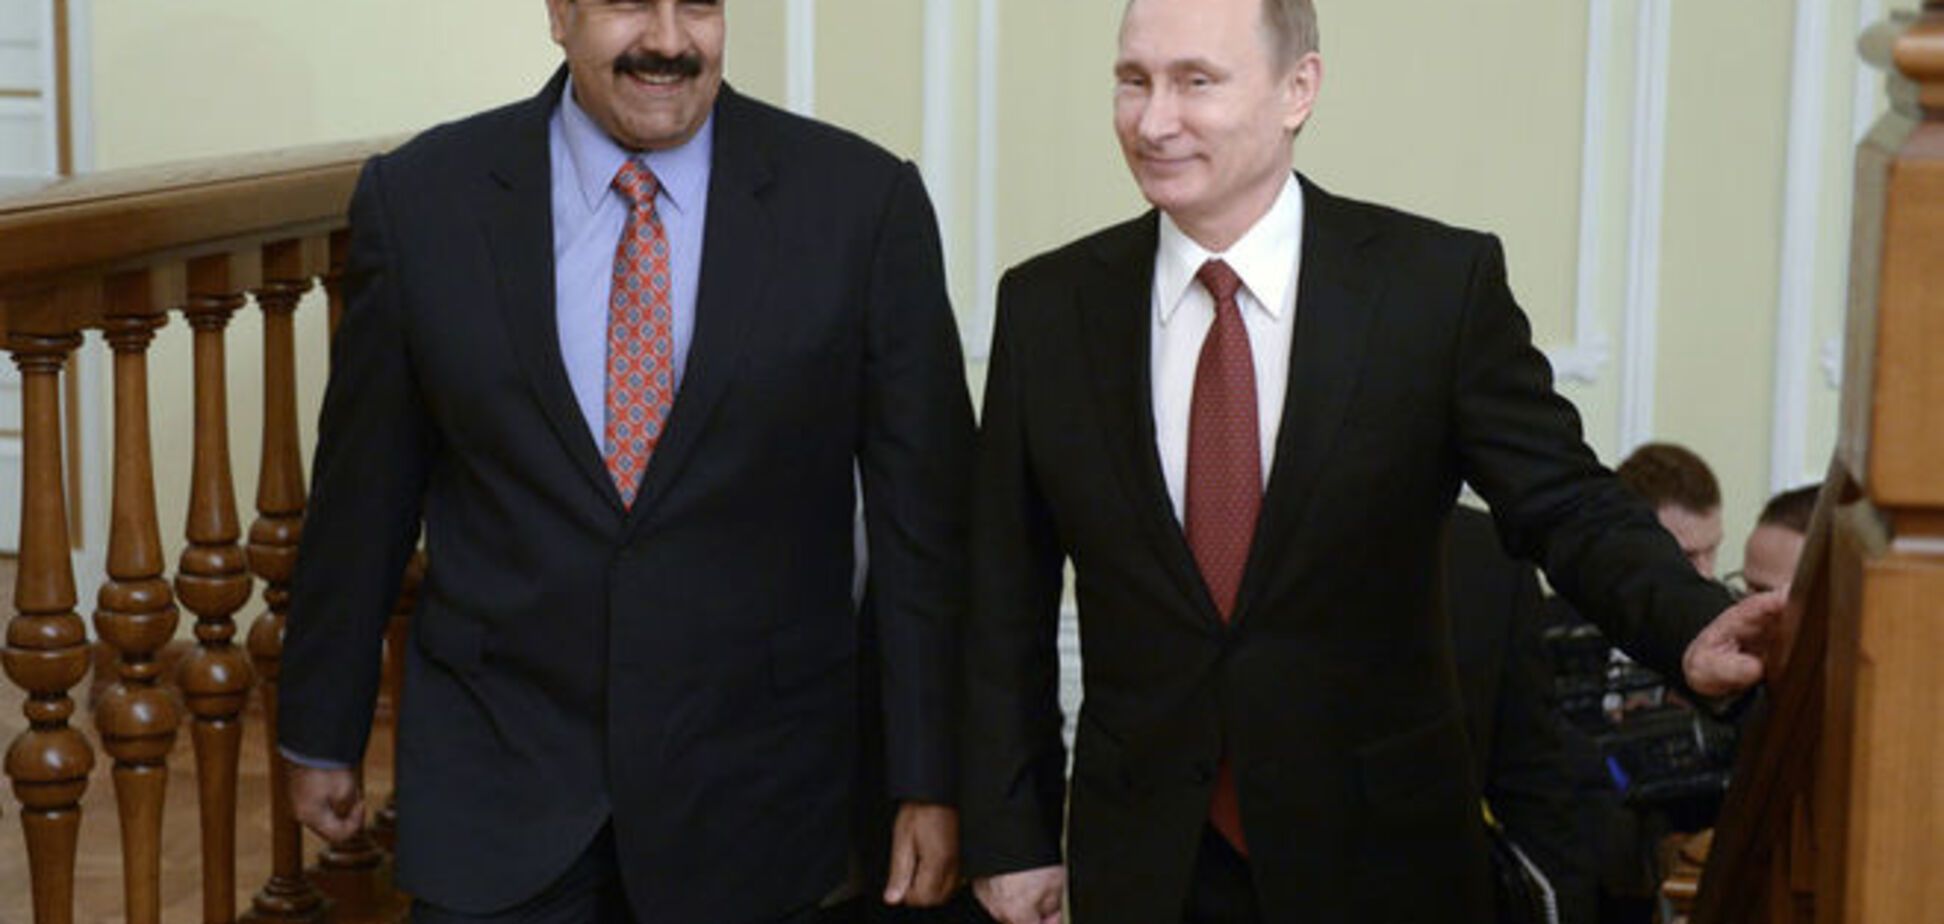 Путин уговорил главу Венесуэлы вместе отметить 70-летие победы